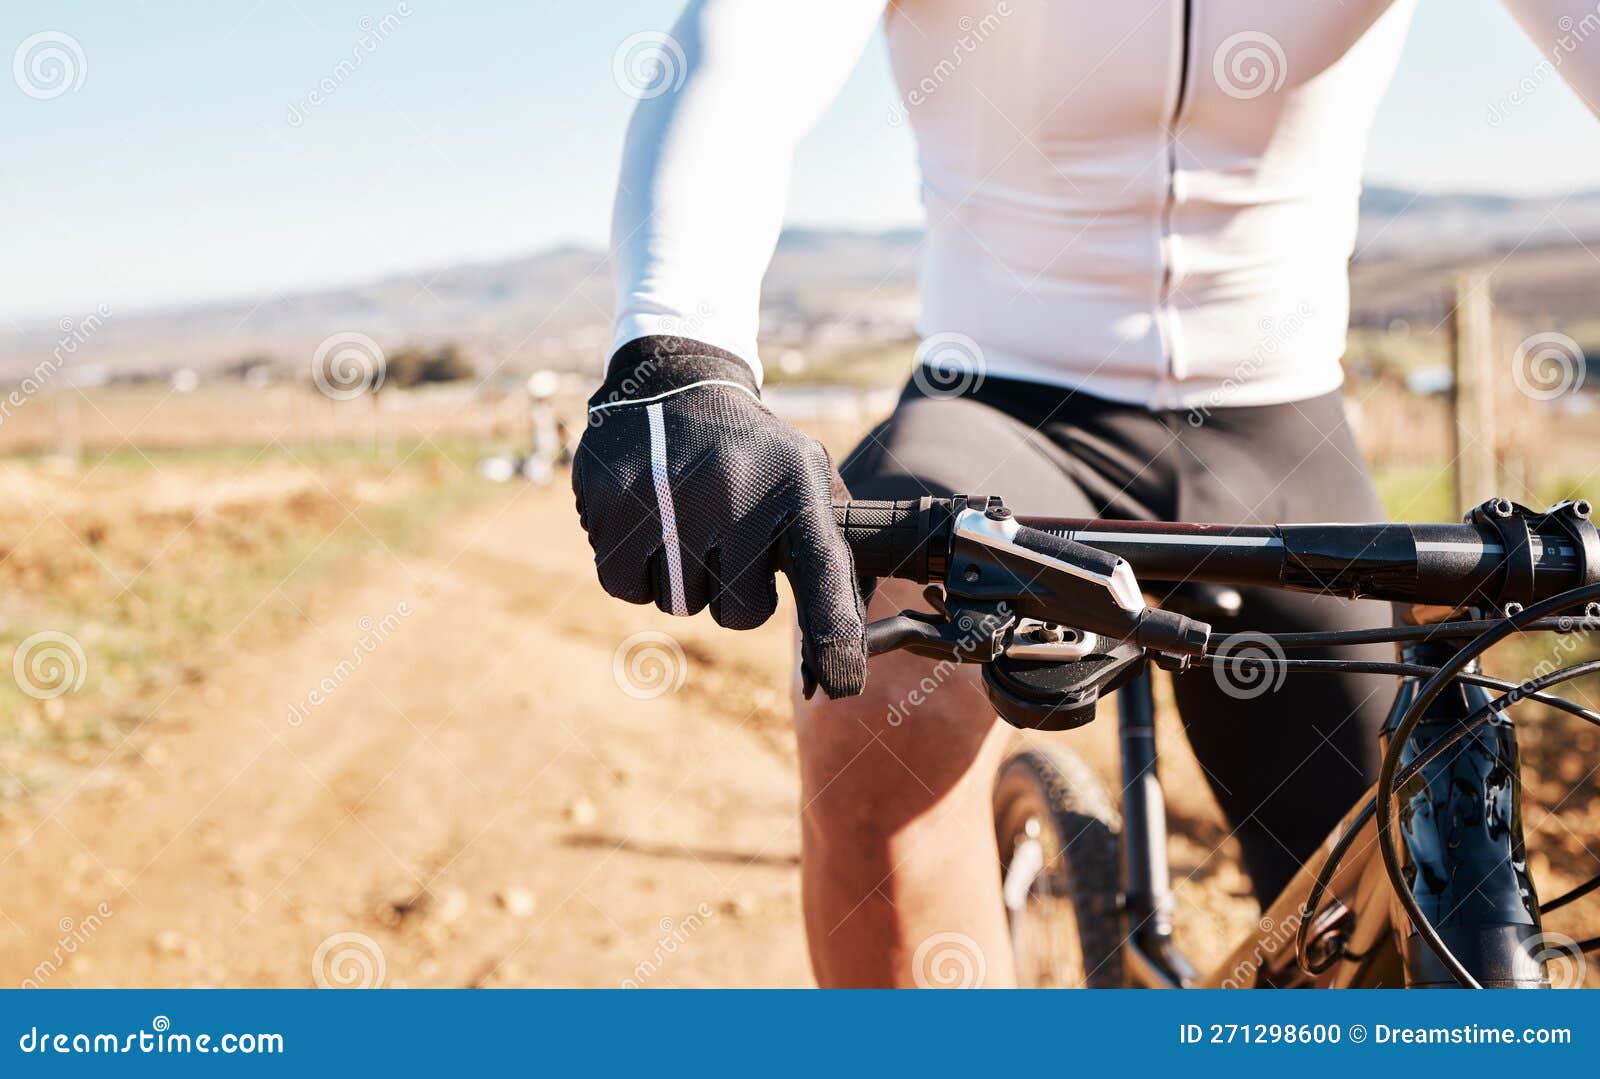 Homme Mains Gants Et Vélo Cyclisme Pour L'entraînement Triathlon Sports Et  Transport Cardio. Moto Cycliste Closeup Photo stock - Image du sain, libre:  271298600